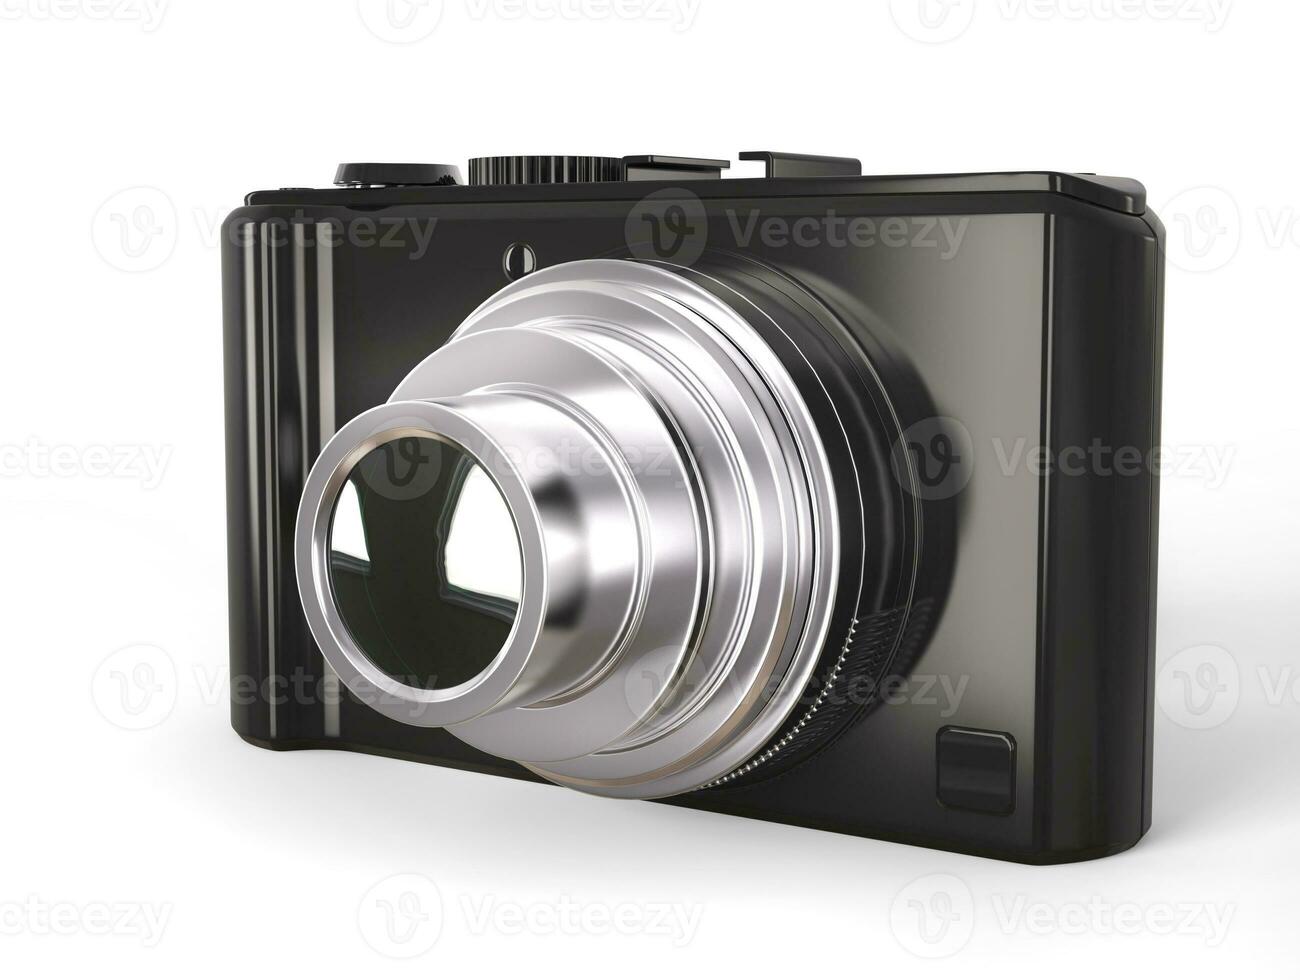 Preto moderno compactar digital foto Câmera com prata lente